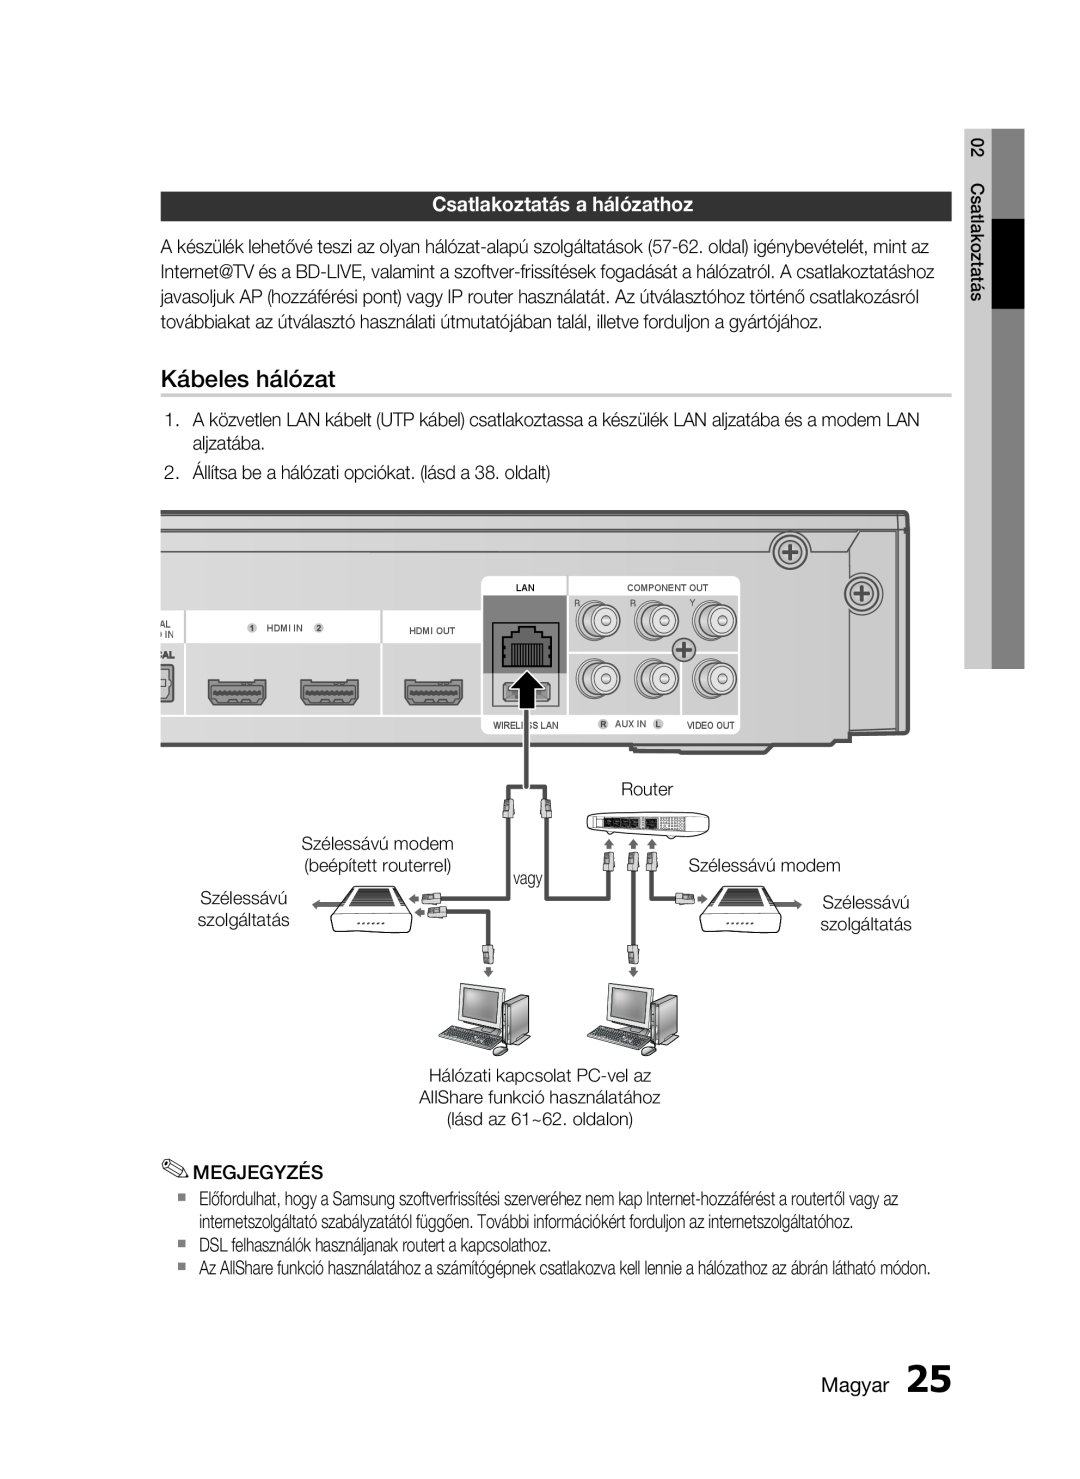 Samsung HT-C5900/XEE Kábeles hálózat, Csatlakoztatás a hálózathoz, Router, Magyar, Szélessávú modem beépített routerrel 